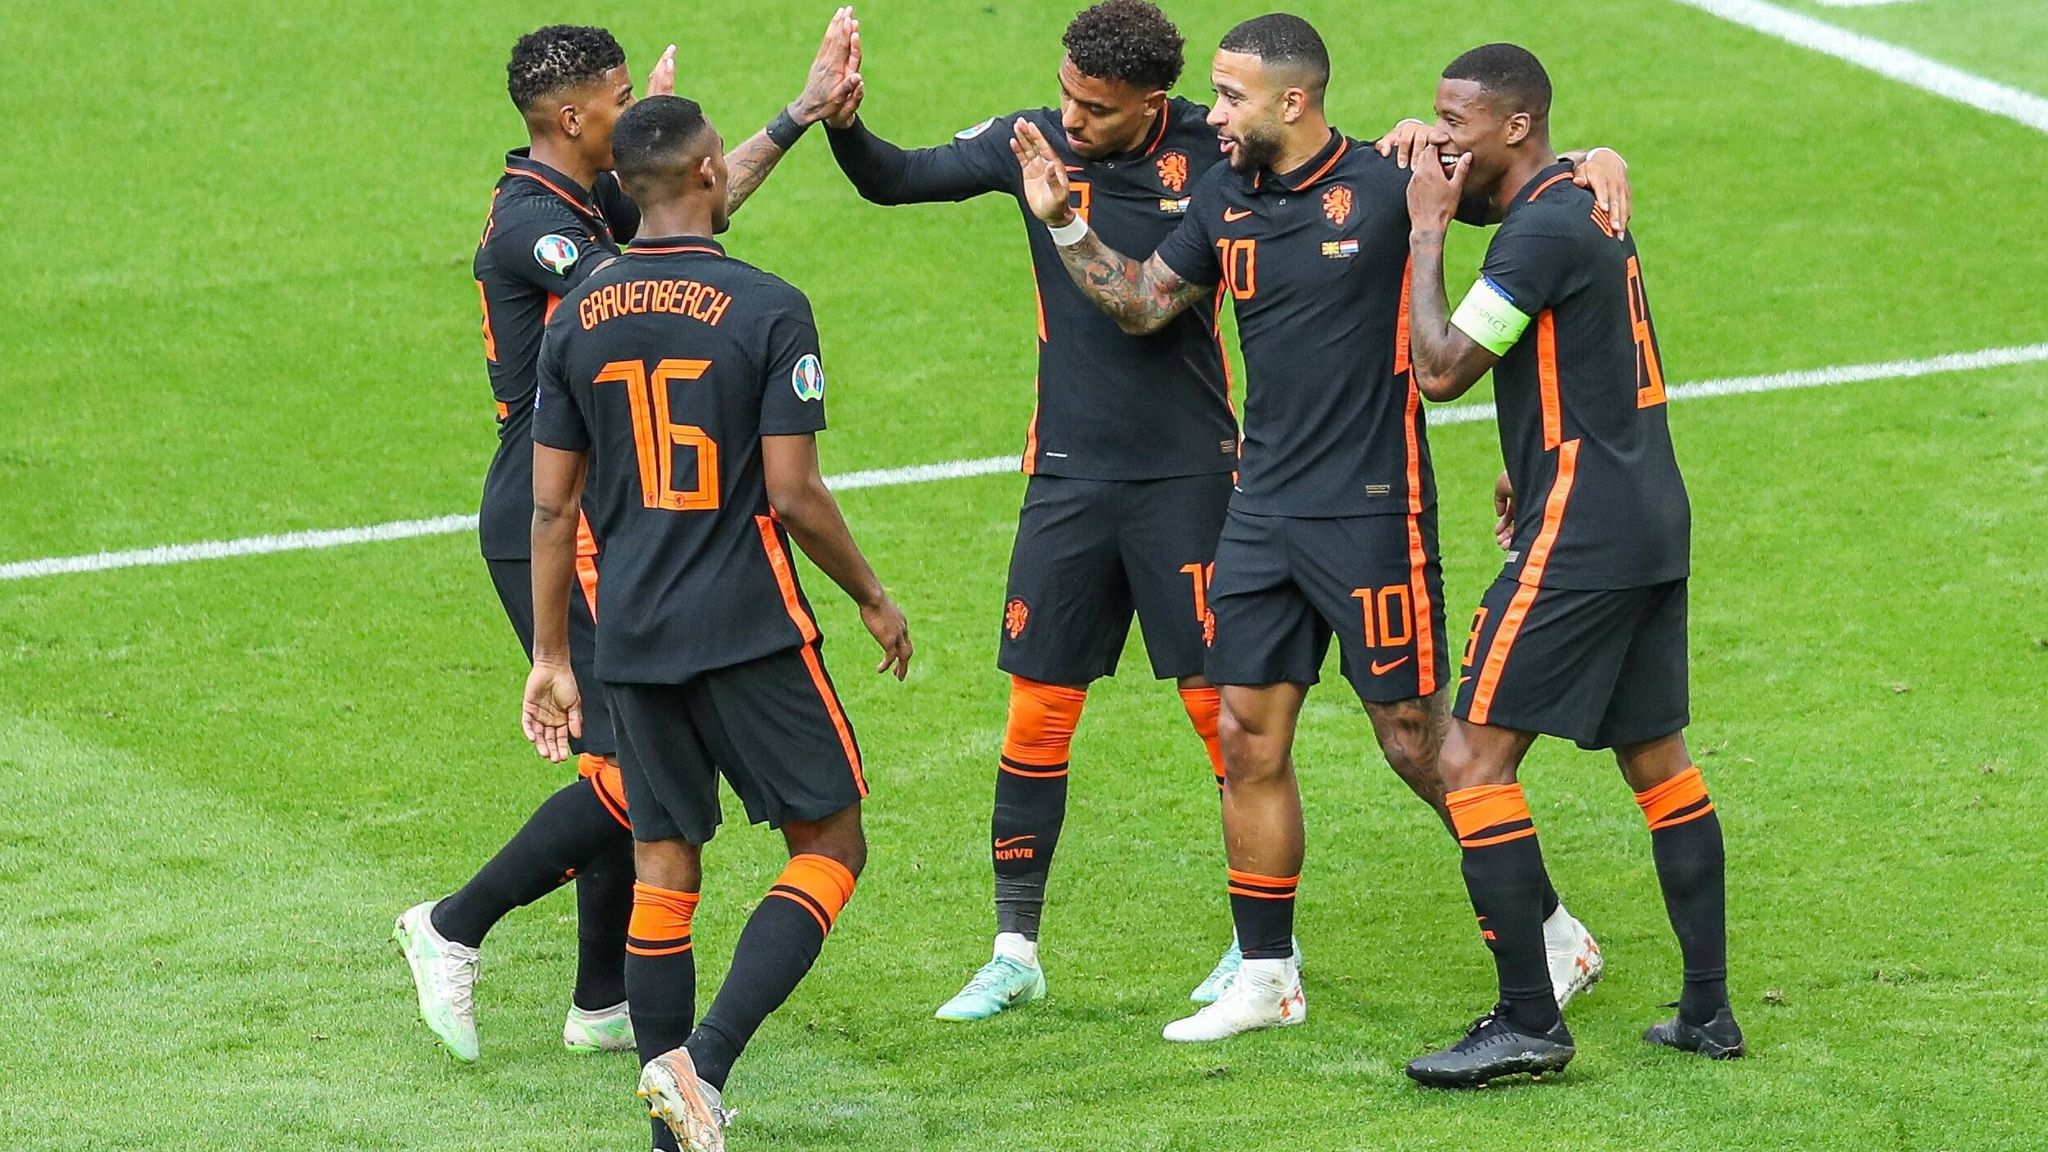 Nordmazedonien – Niederlande / Nordmazedonien - Niederlande 0:3, EM-Vorrunde, Gruppe C, 3 ... : Die sportlich unbedeutende partie gelang aber ansehnlich.